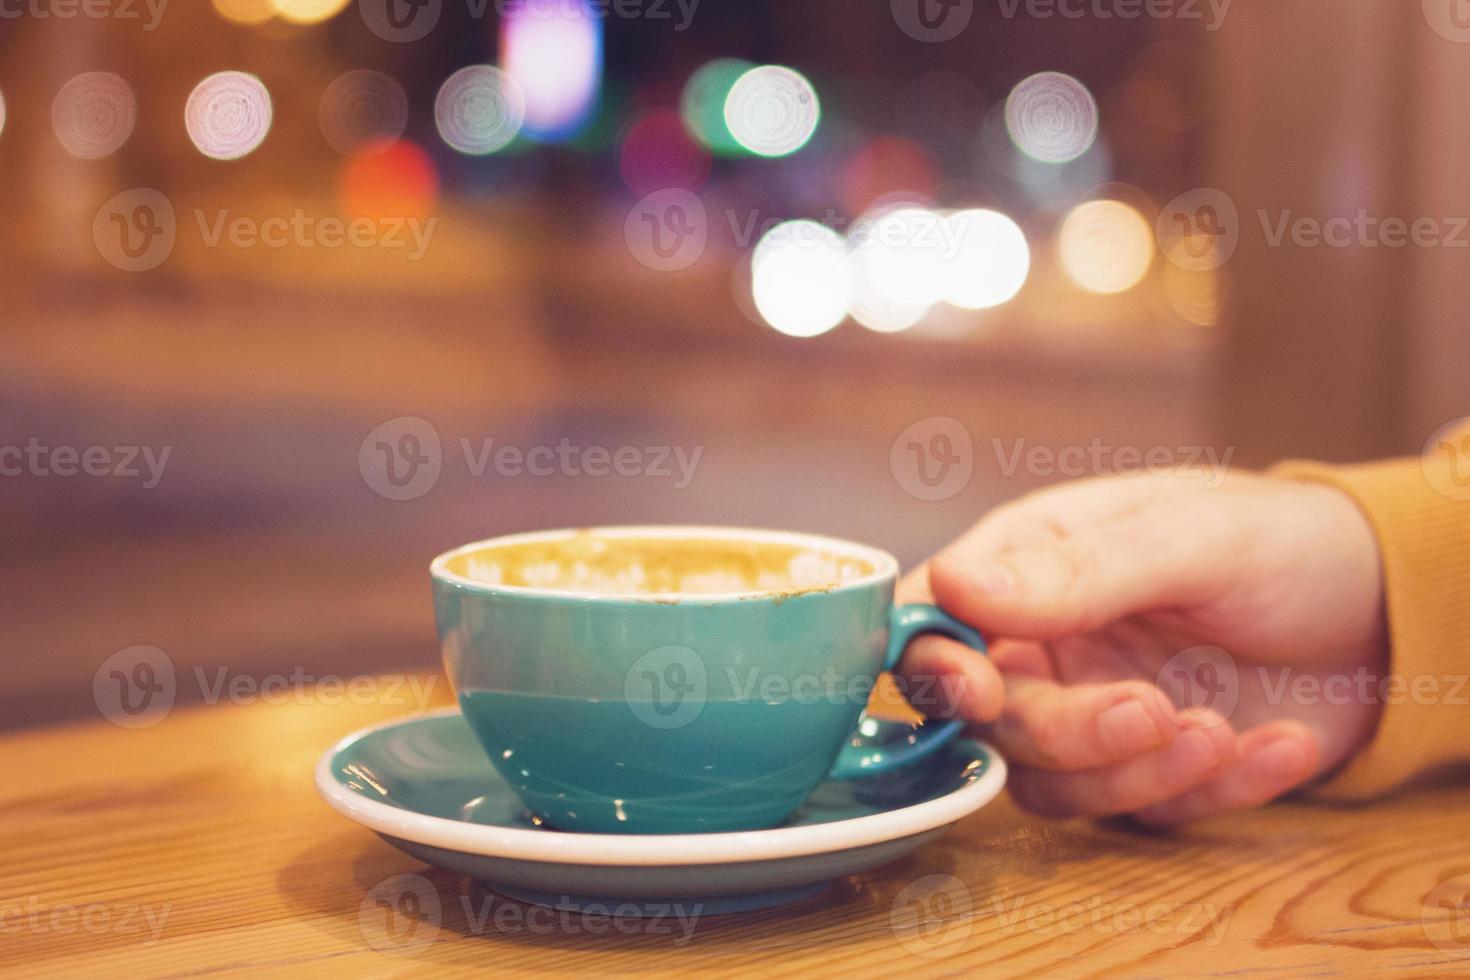 mano de hombre con una taza de café en un café sobre un fondo de luces de la ciudad detrás de la ventana. foto tonificada.